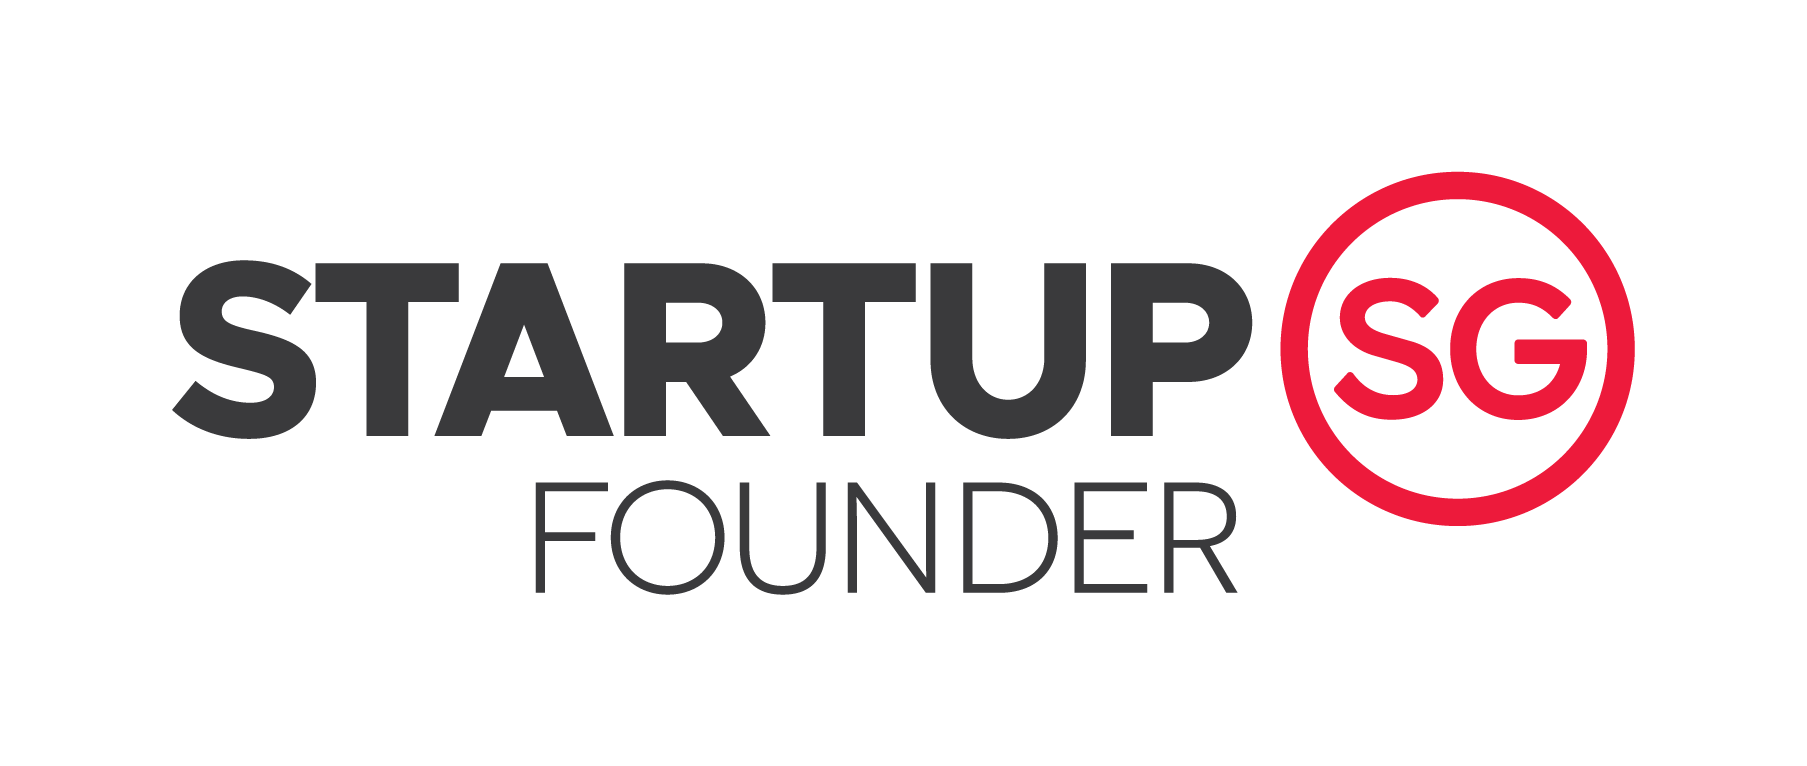 StartupSG Founder_Logo